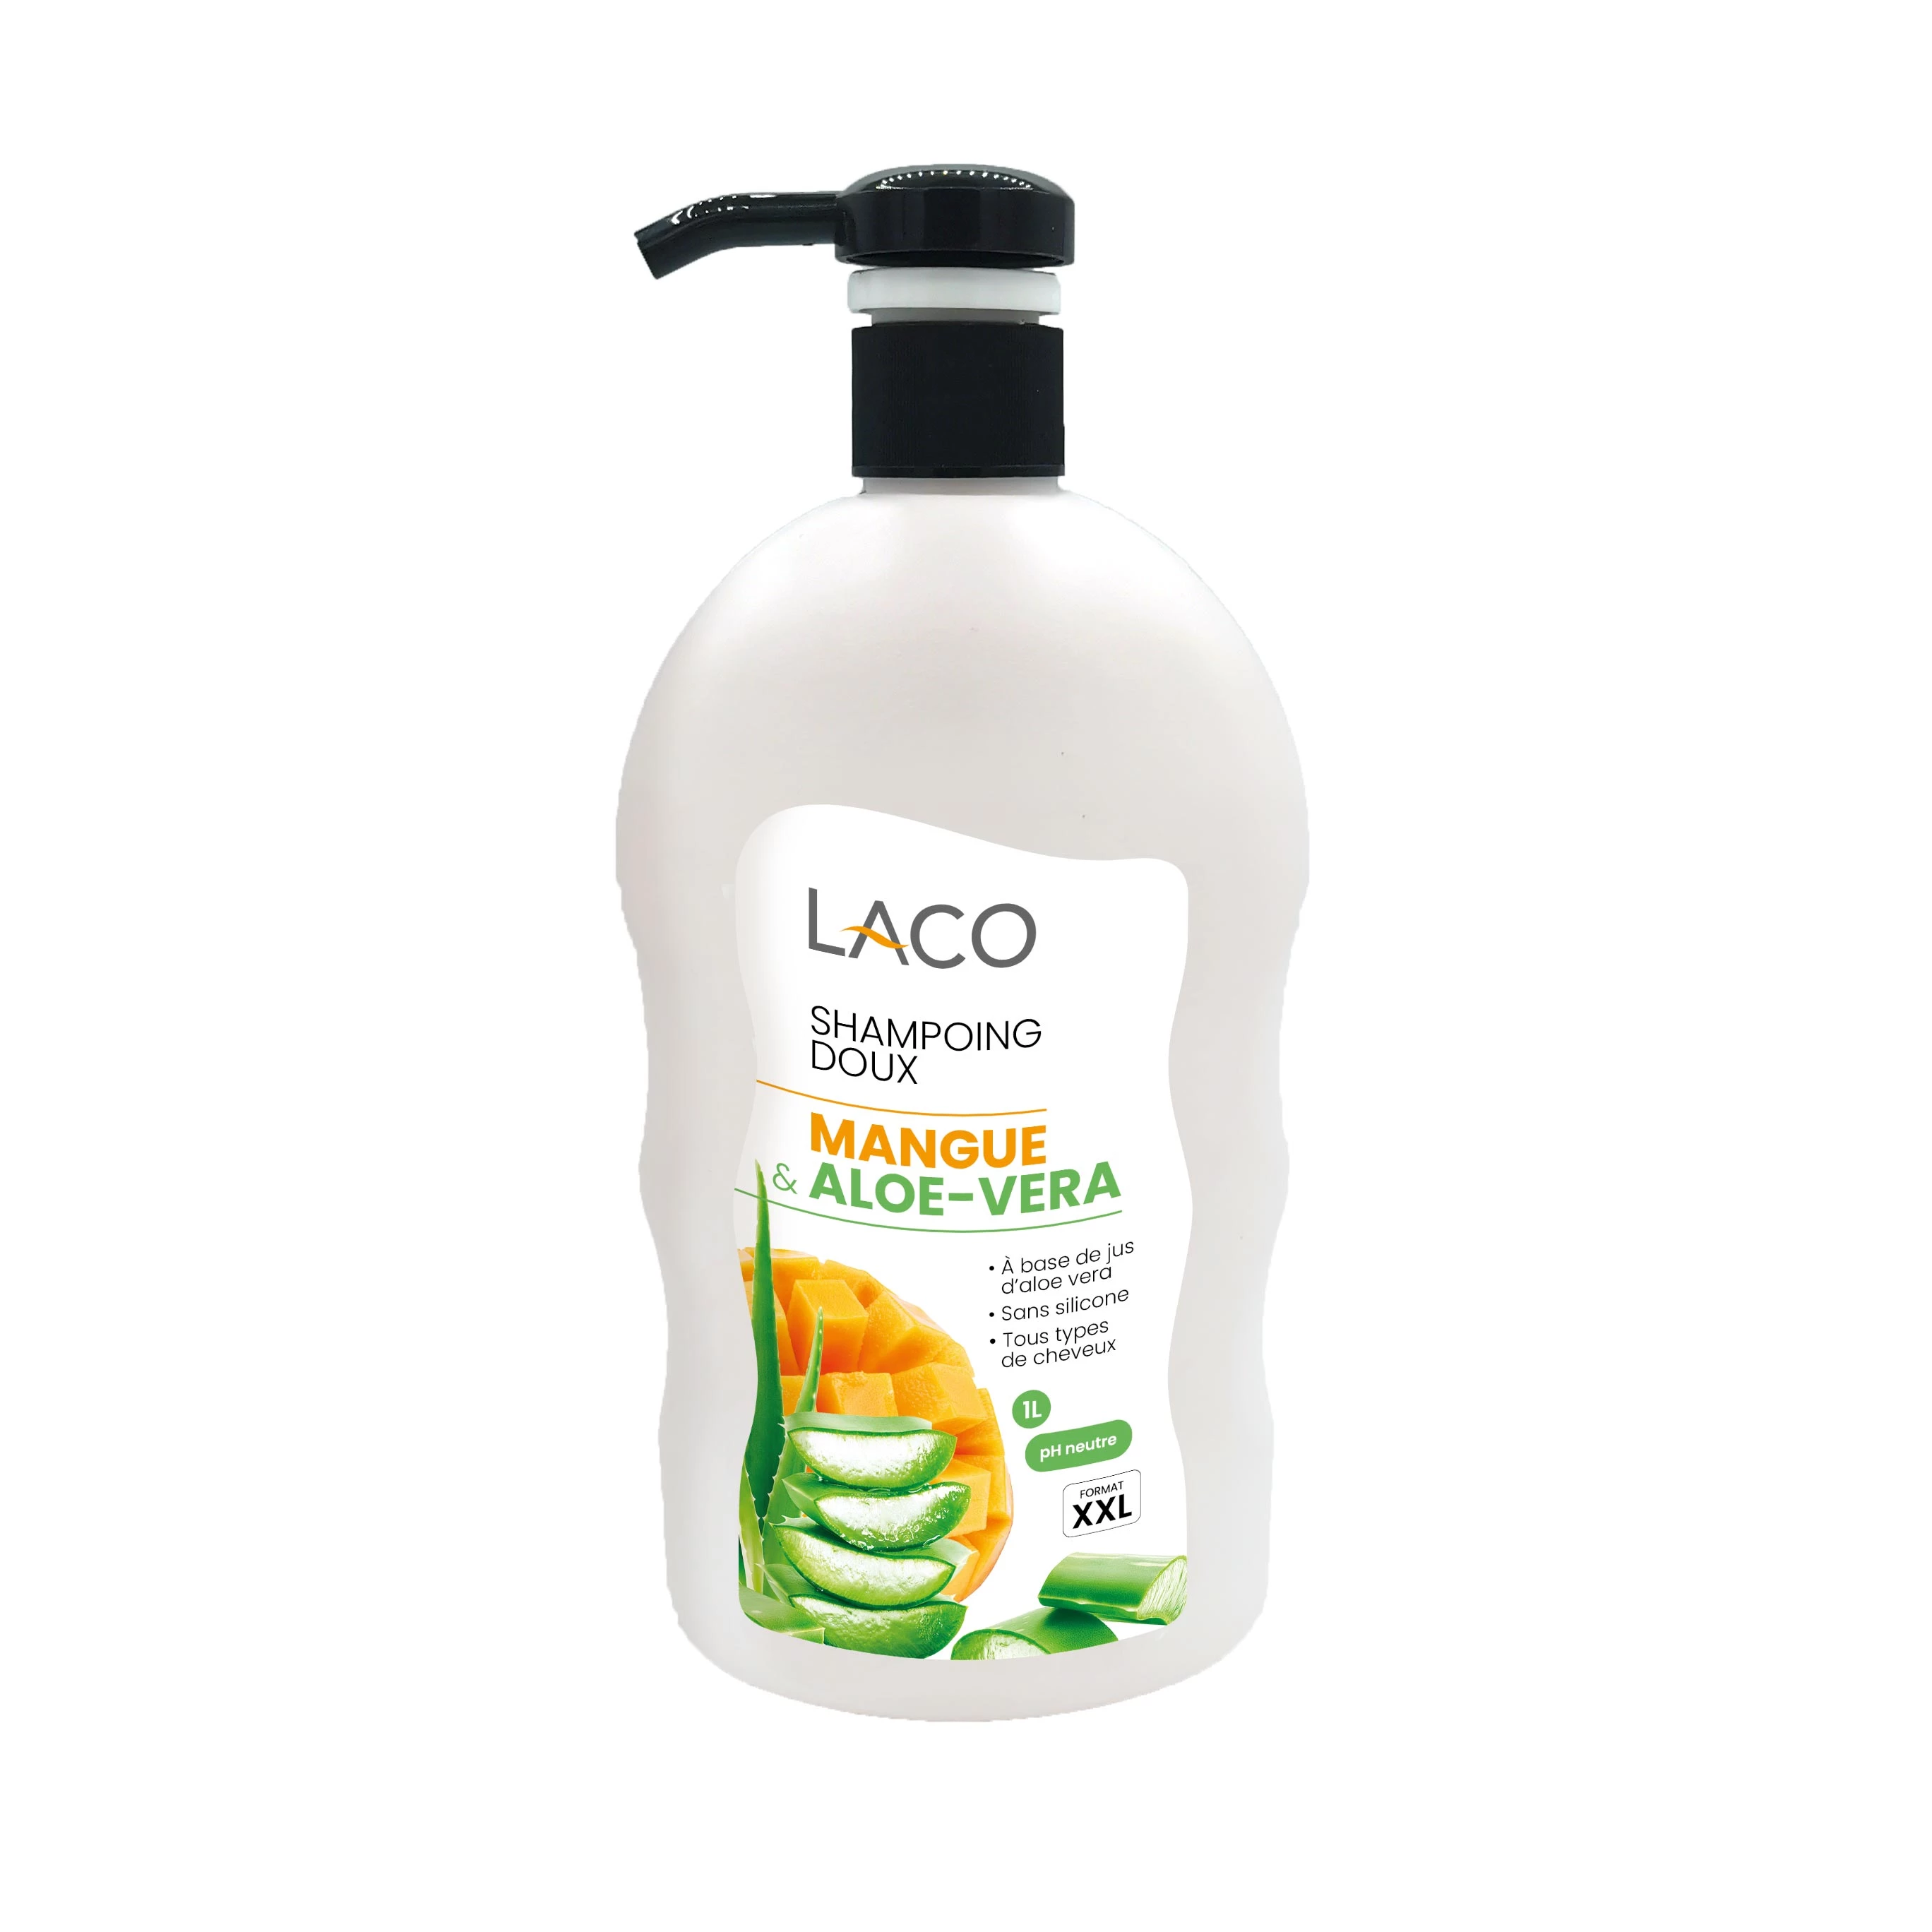 Mango Aloe Vera Shampoo, 1L - LACO